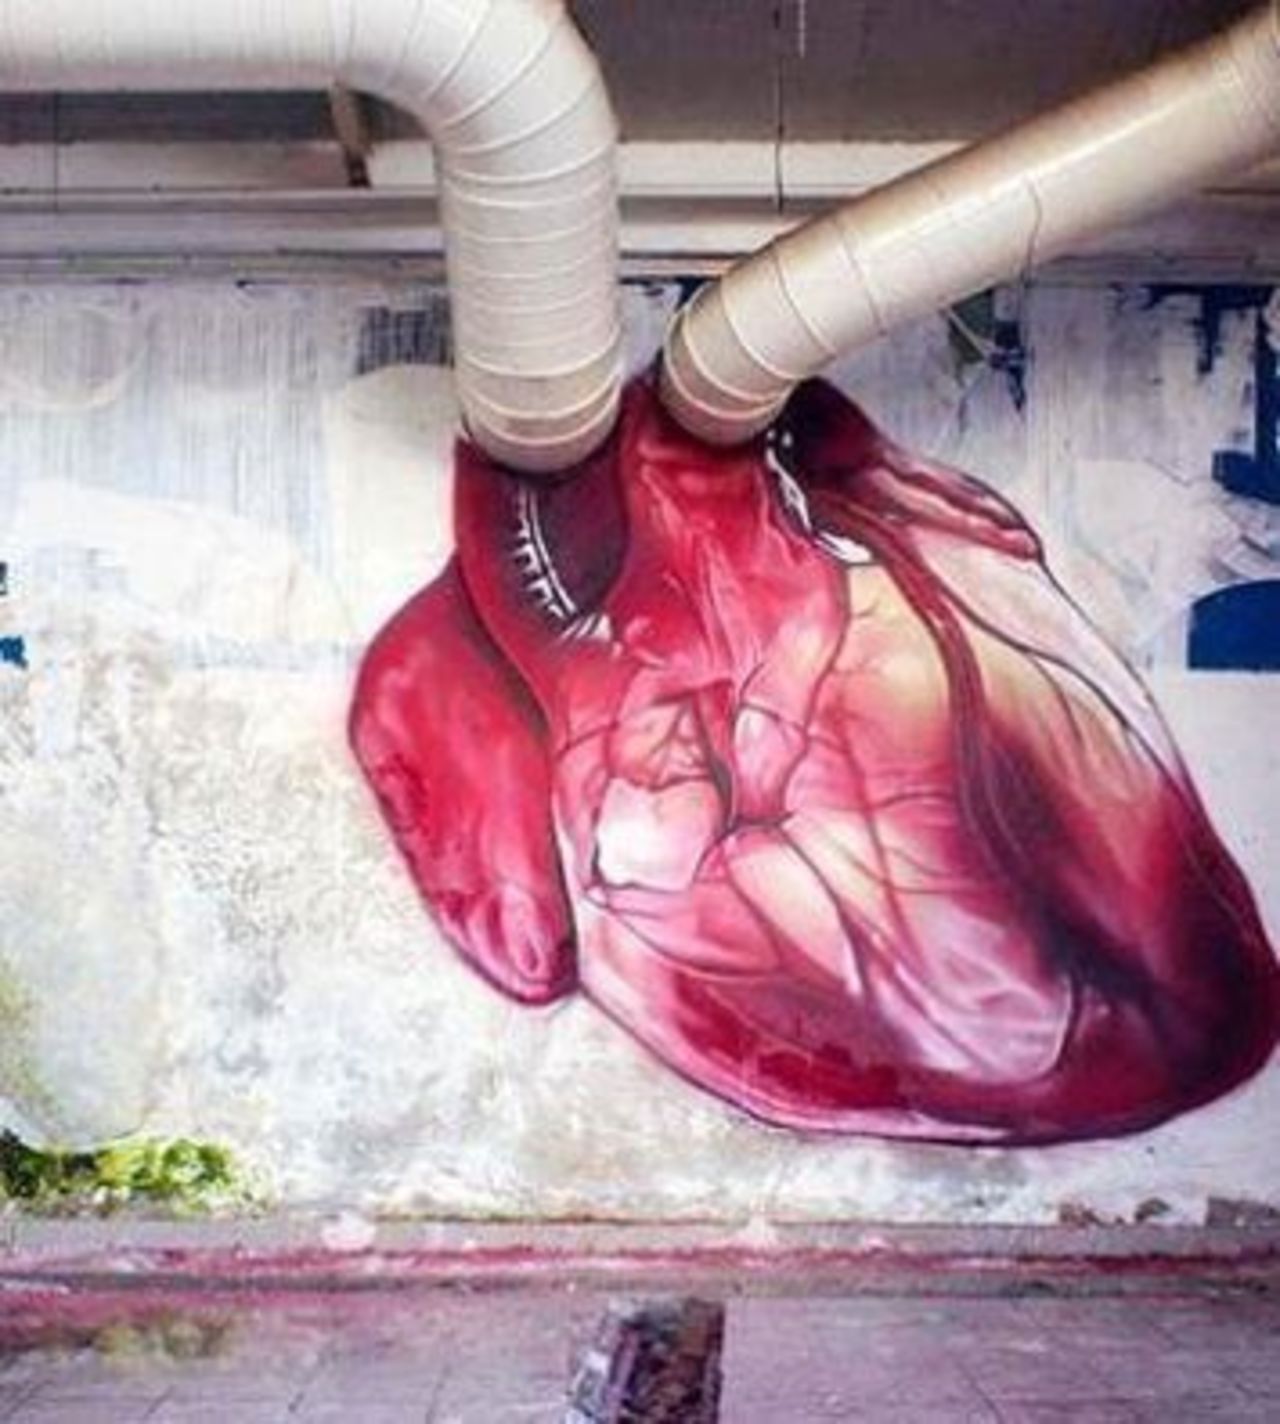 #Heart – Creative #Streetart | Be ▲rtist - Be ▲rt https://beartistbeart.com/2016/08/22/heart-creative-streetart/?utm_campaign=crowdfire&utm_content=crowdfire&utm_medium=social&utm_source=twitter https://t.co/70haFvlZrt